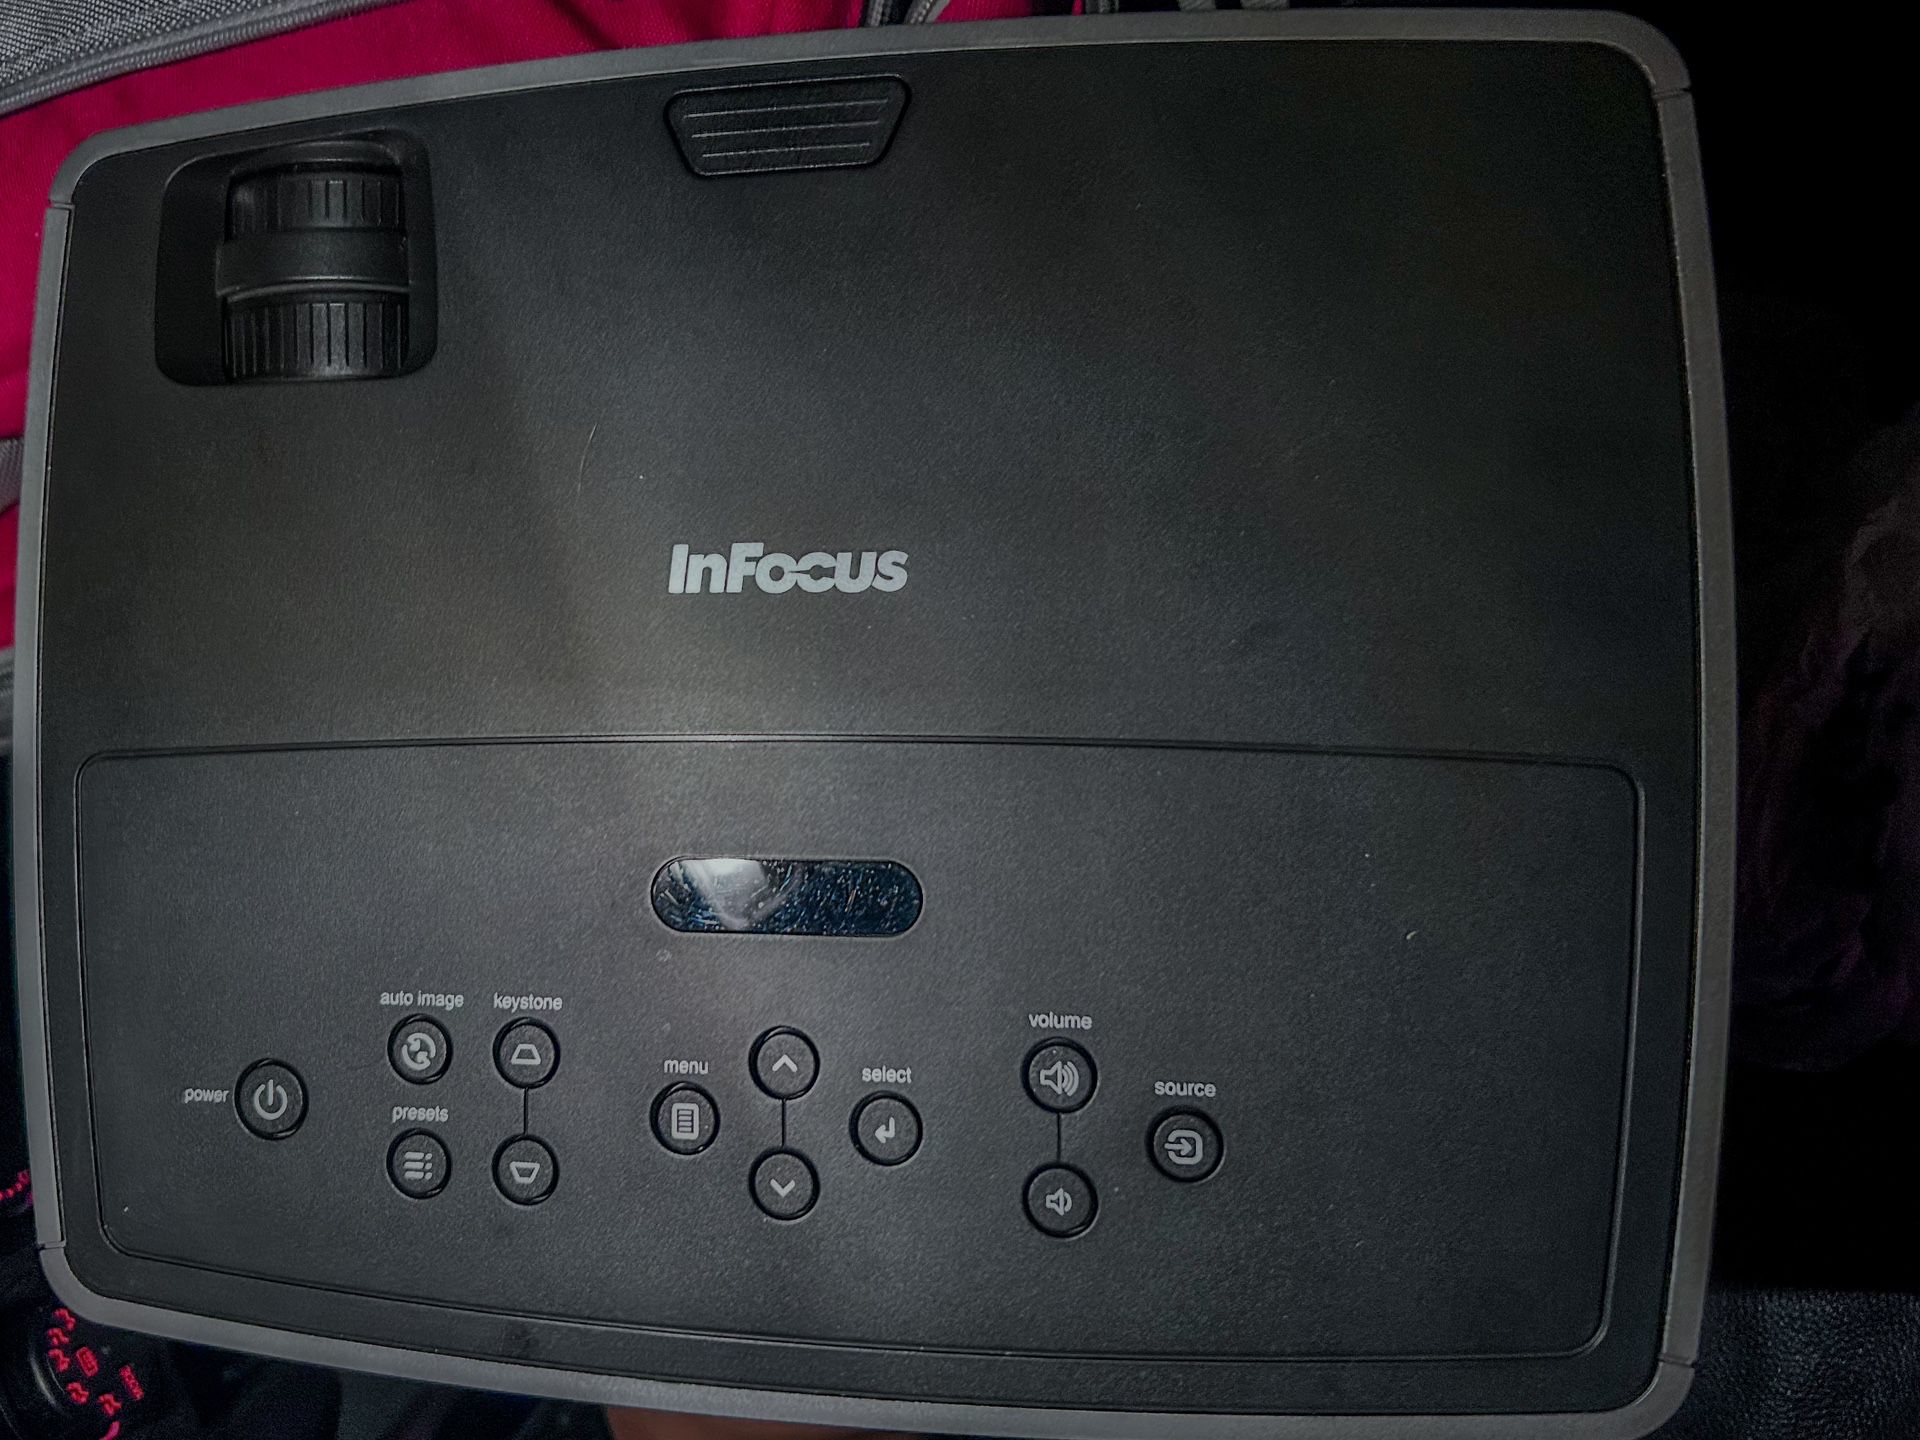 Infocus projector